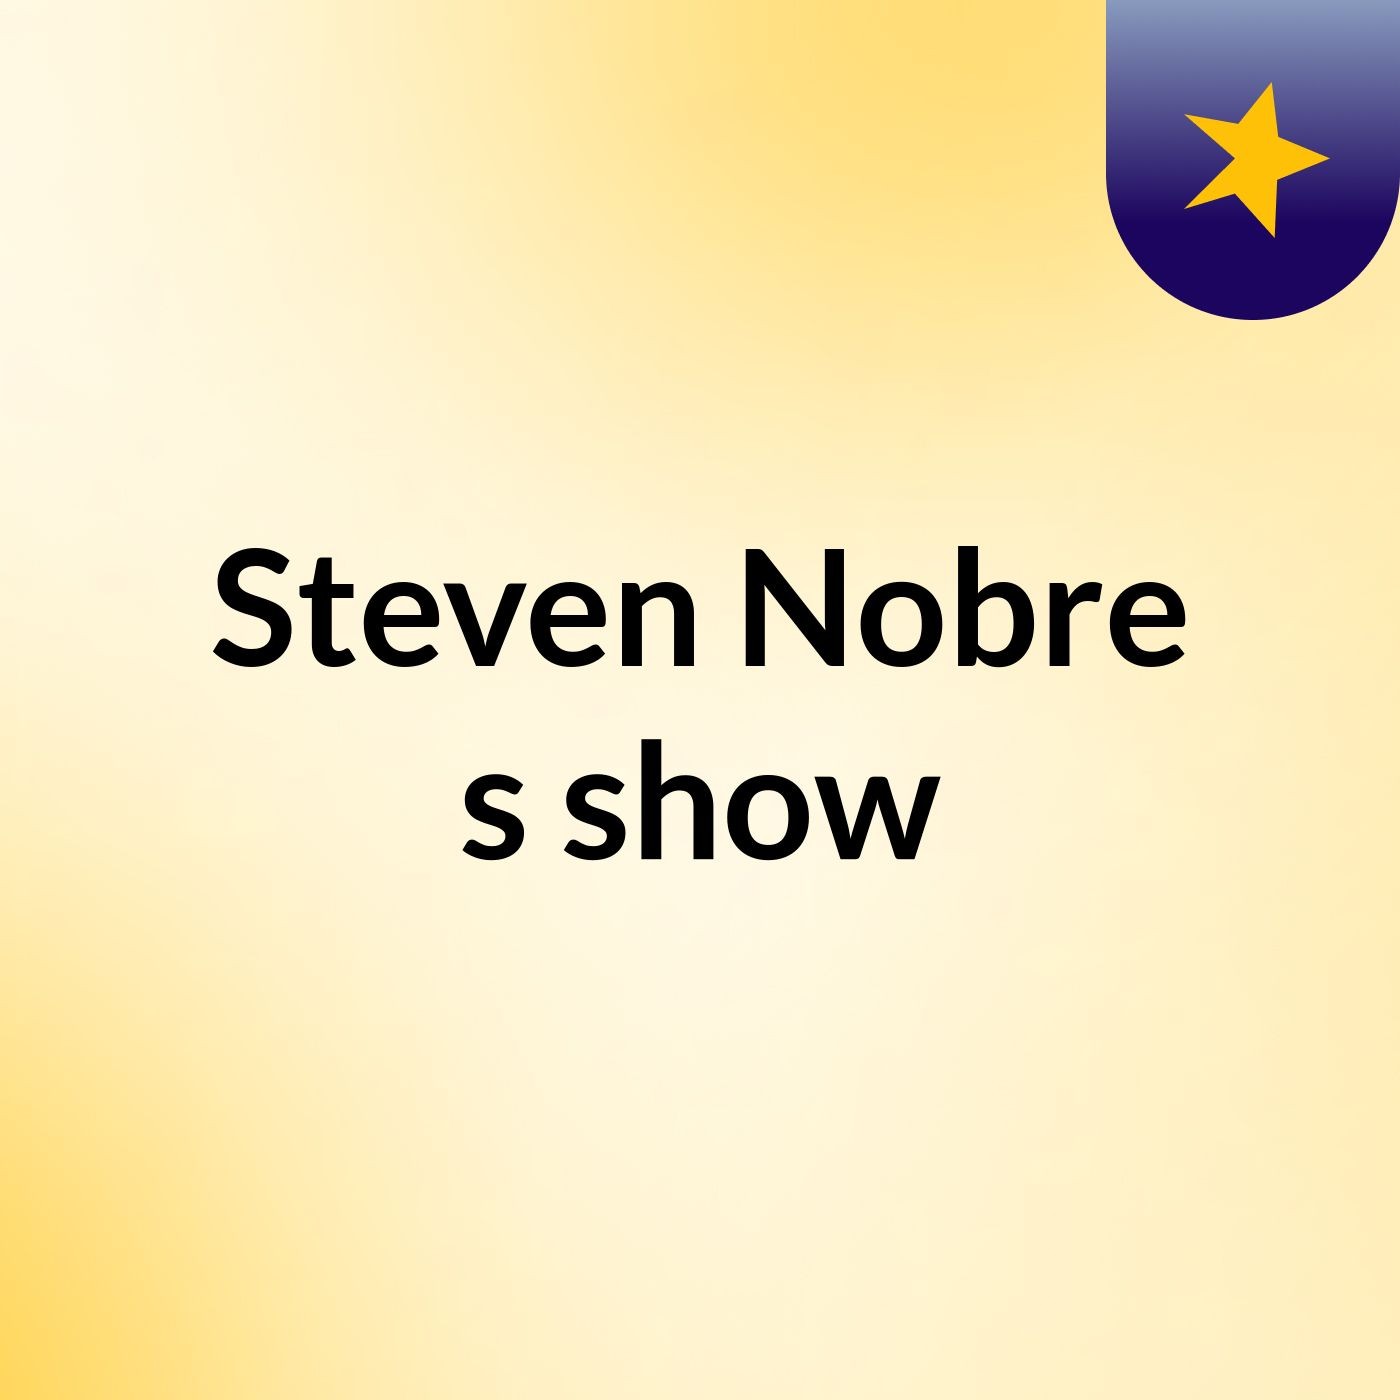 Steven Nobre's show